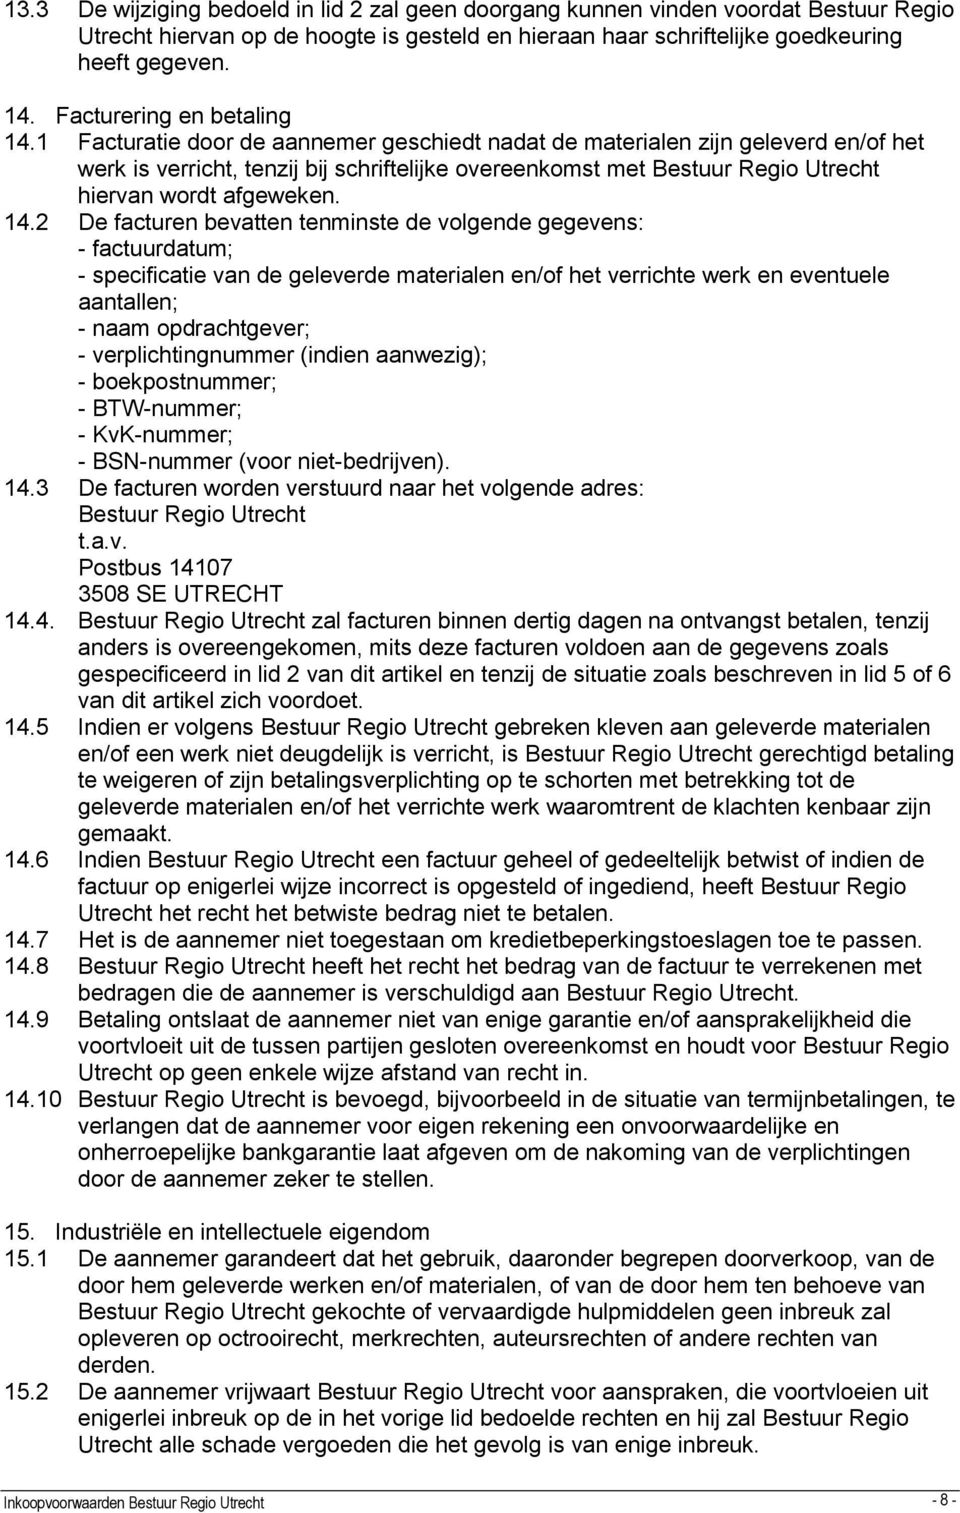 1 Facturatie door de aannemer geschiedt nadat de materialen zijn geleverd en/of het werk is verricht, tenzij bij schriftelijke overeenkomst met Bestuur Regio Utrecht hiervan wordt afgeweken. 14.